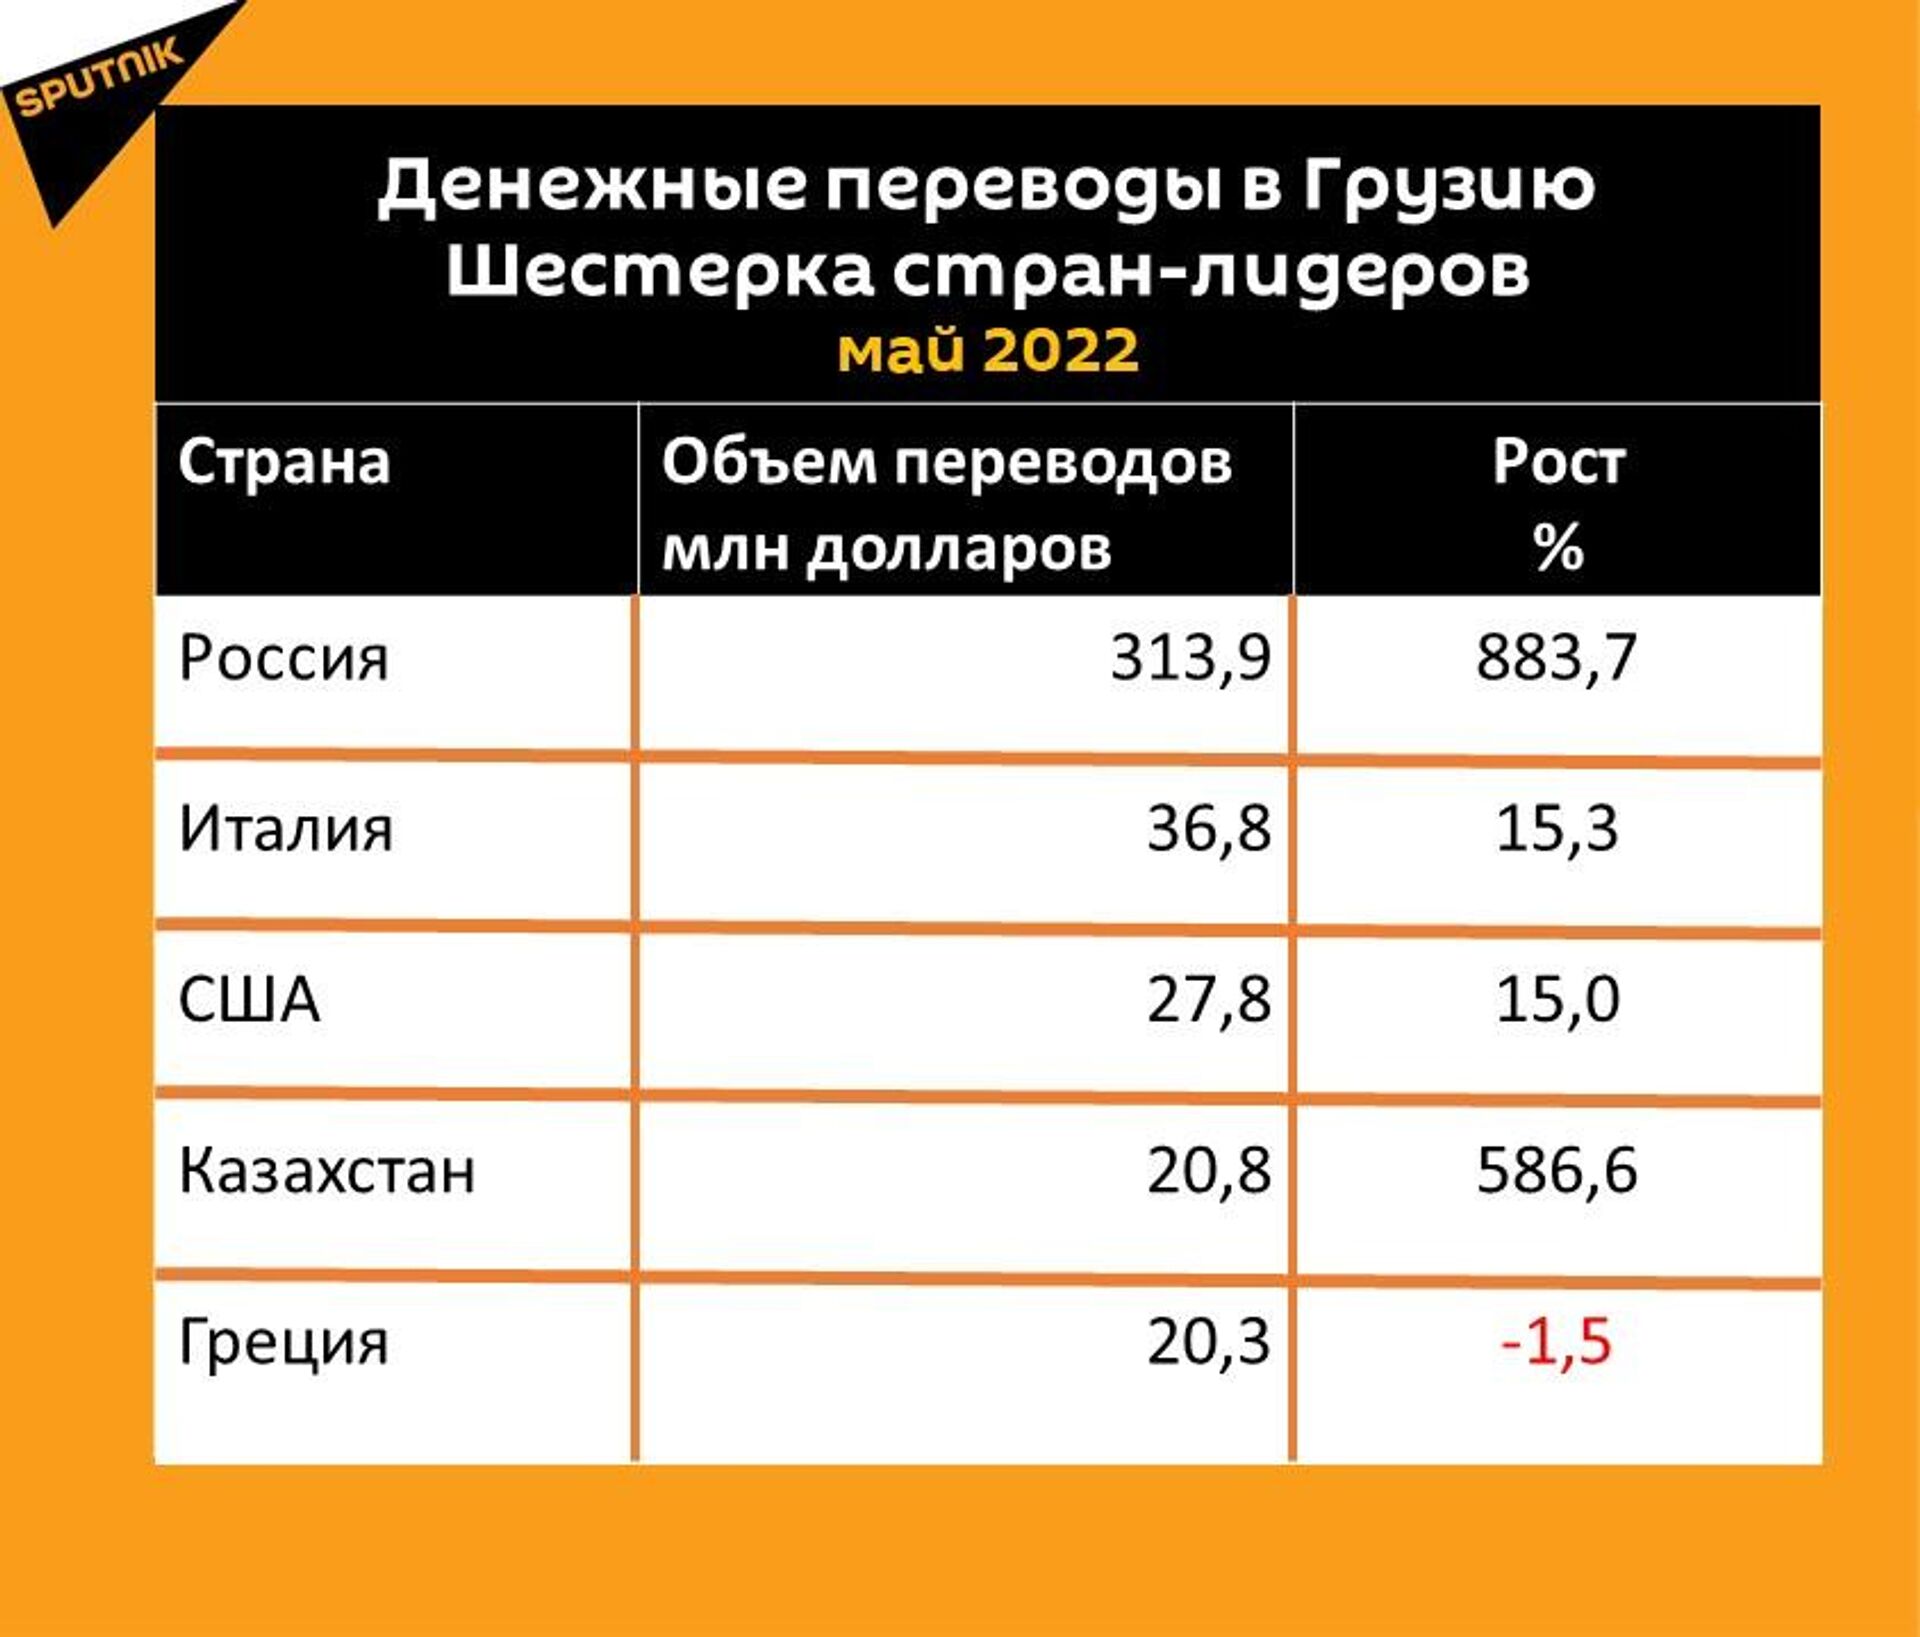 Статистика денежных переводов в Грузию за май 2022 года - Sputnik Грузия, 1920, 16.06.2022